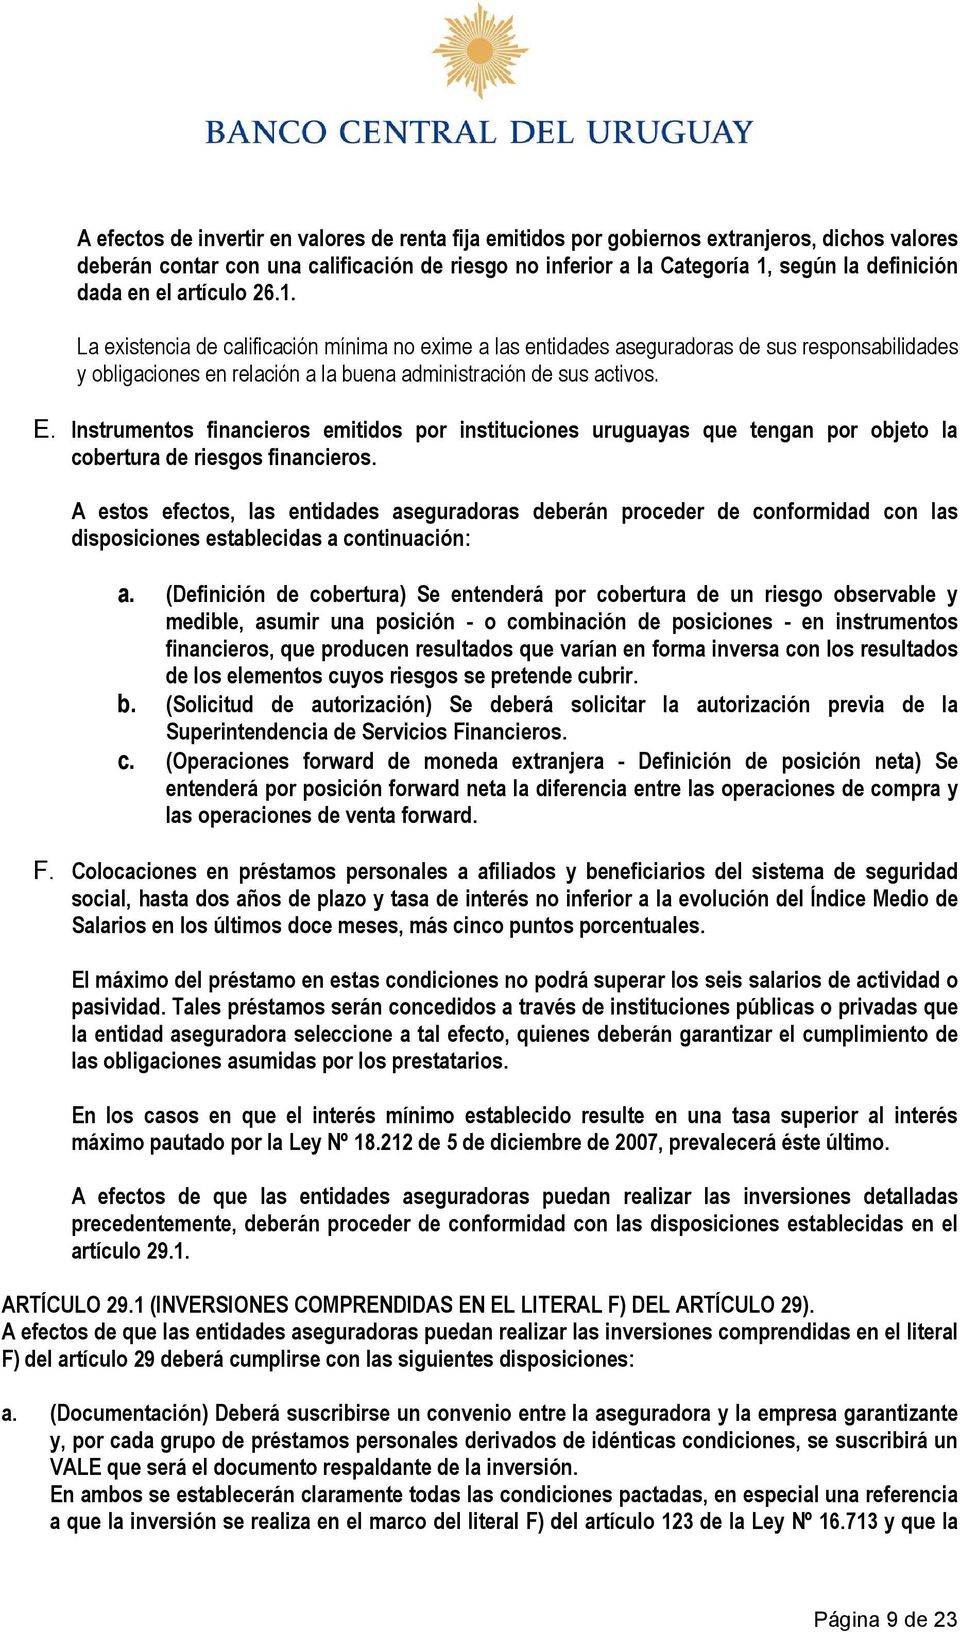 Instrumentos financieros emitidos por instituciones uruguayas que tengan por objeto la cobertura de riesgos financieros.